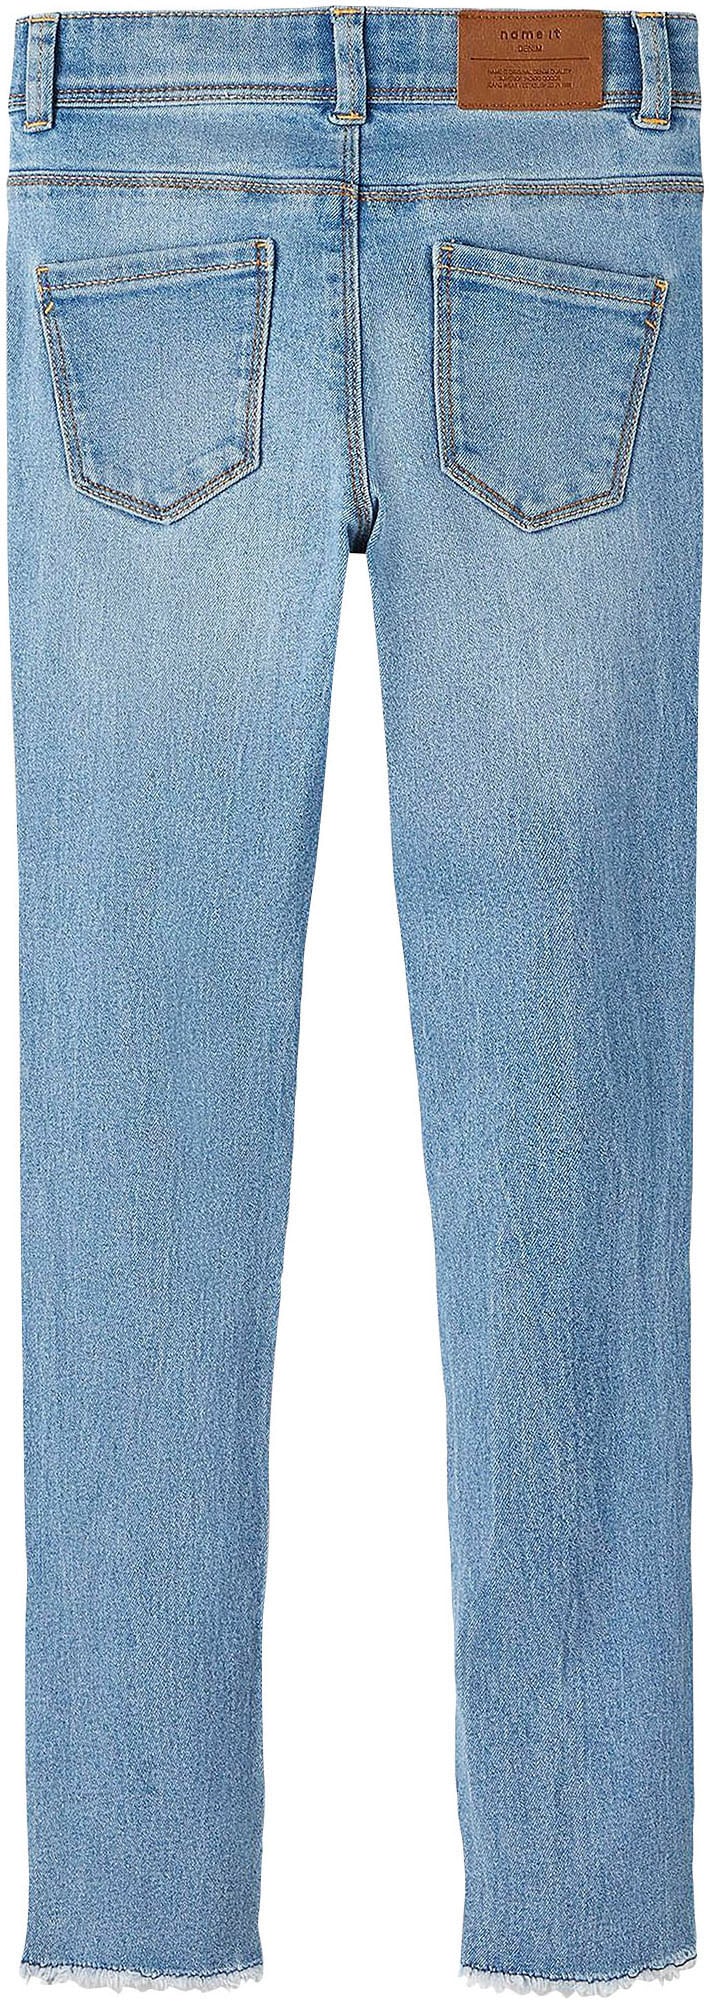 kaufen SKINNY Name NOOS«, 1191-IO Skinny-fit-Jeans JEANS Used-Optik »NKFPOLLY online It